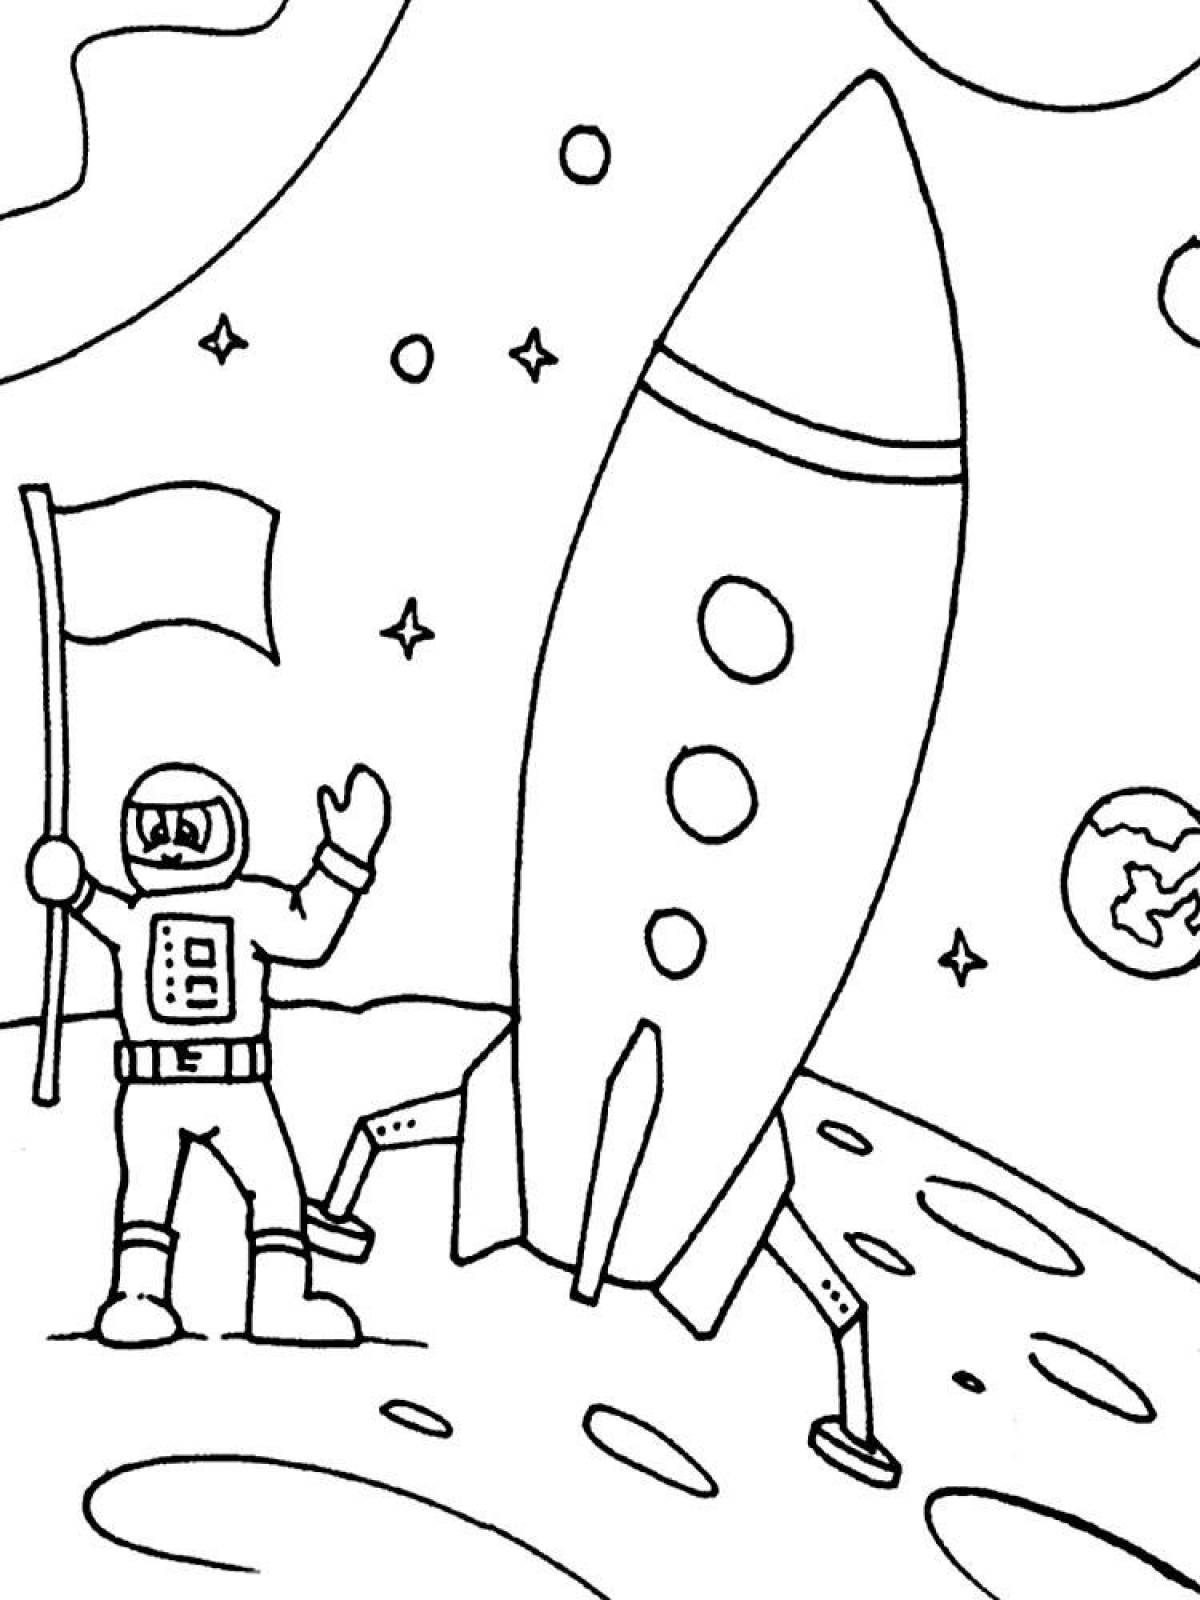 День космонавтики картинки раскраски. Раскраска. В космосе. Рисунок ко Дню космонавтики. Рисунок ко Дню космонавтики раскраска. Раскраска день космонавтики для детей.